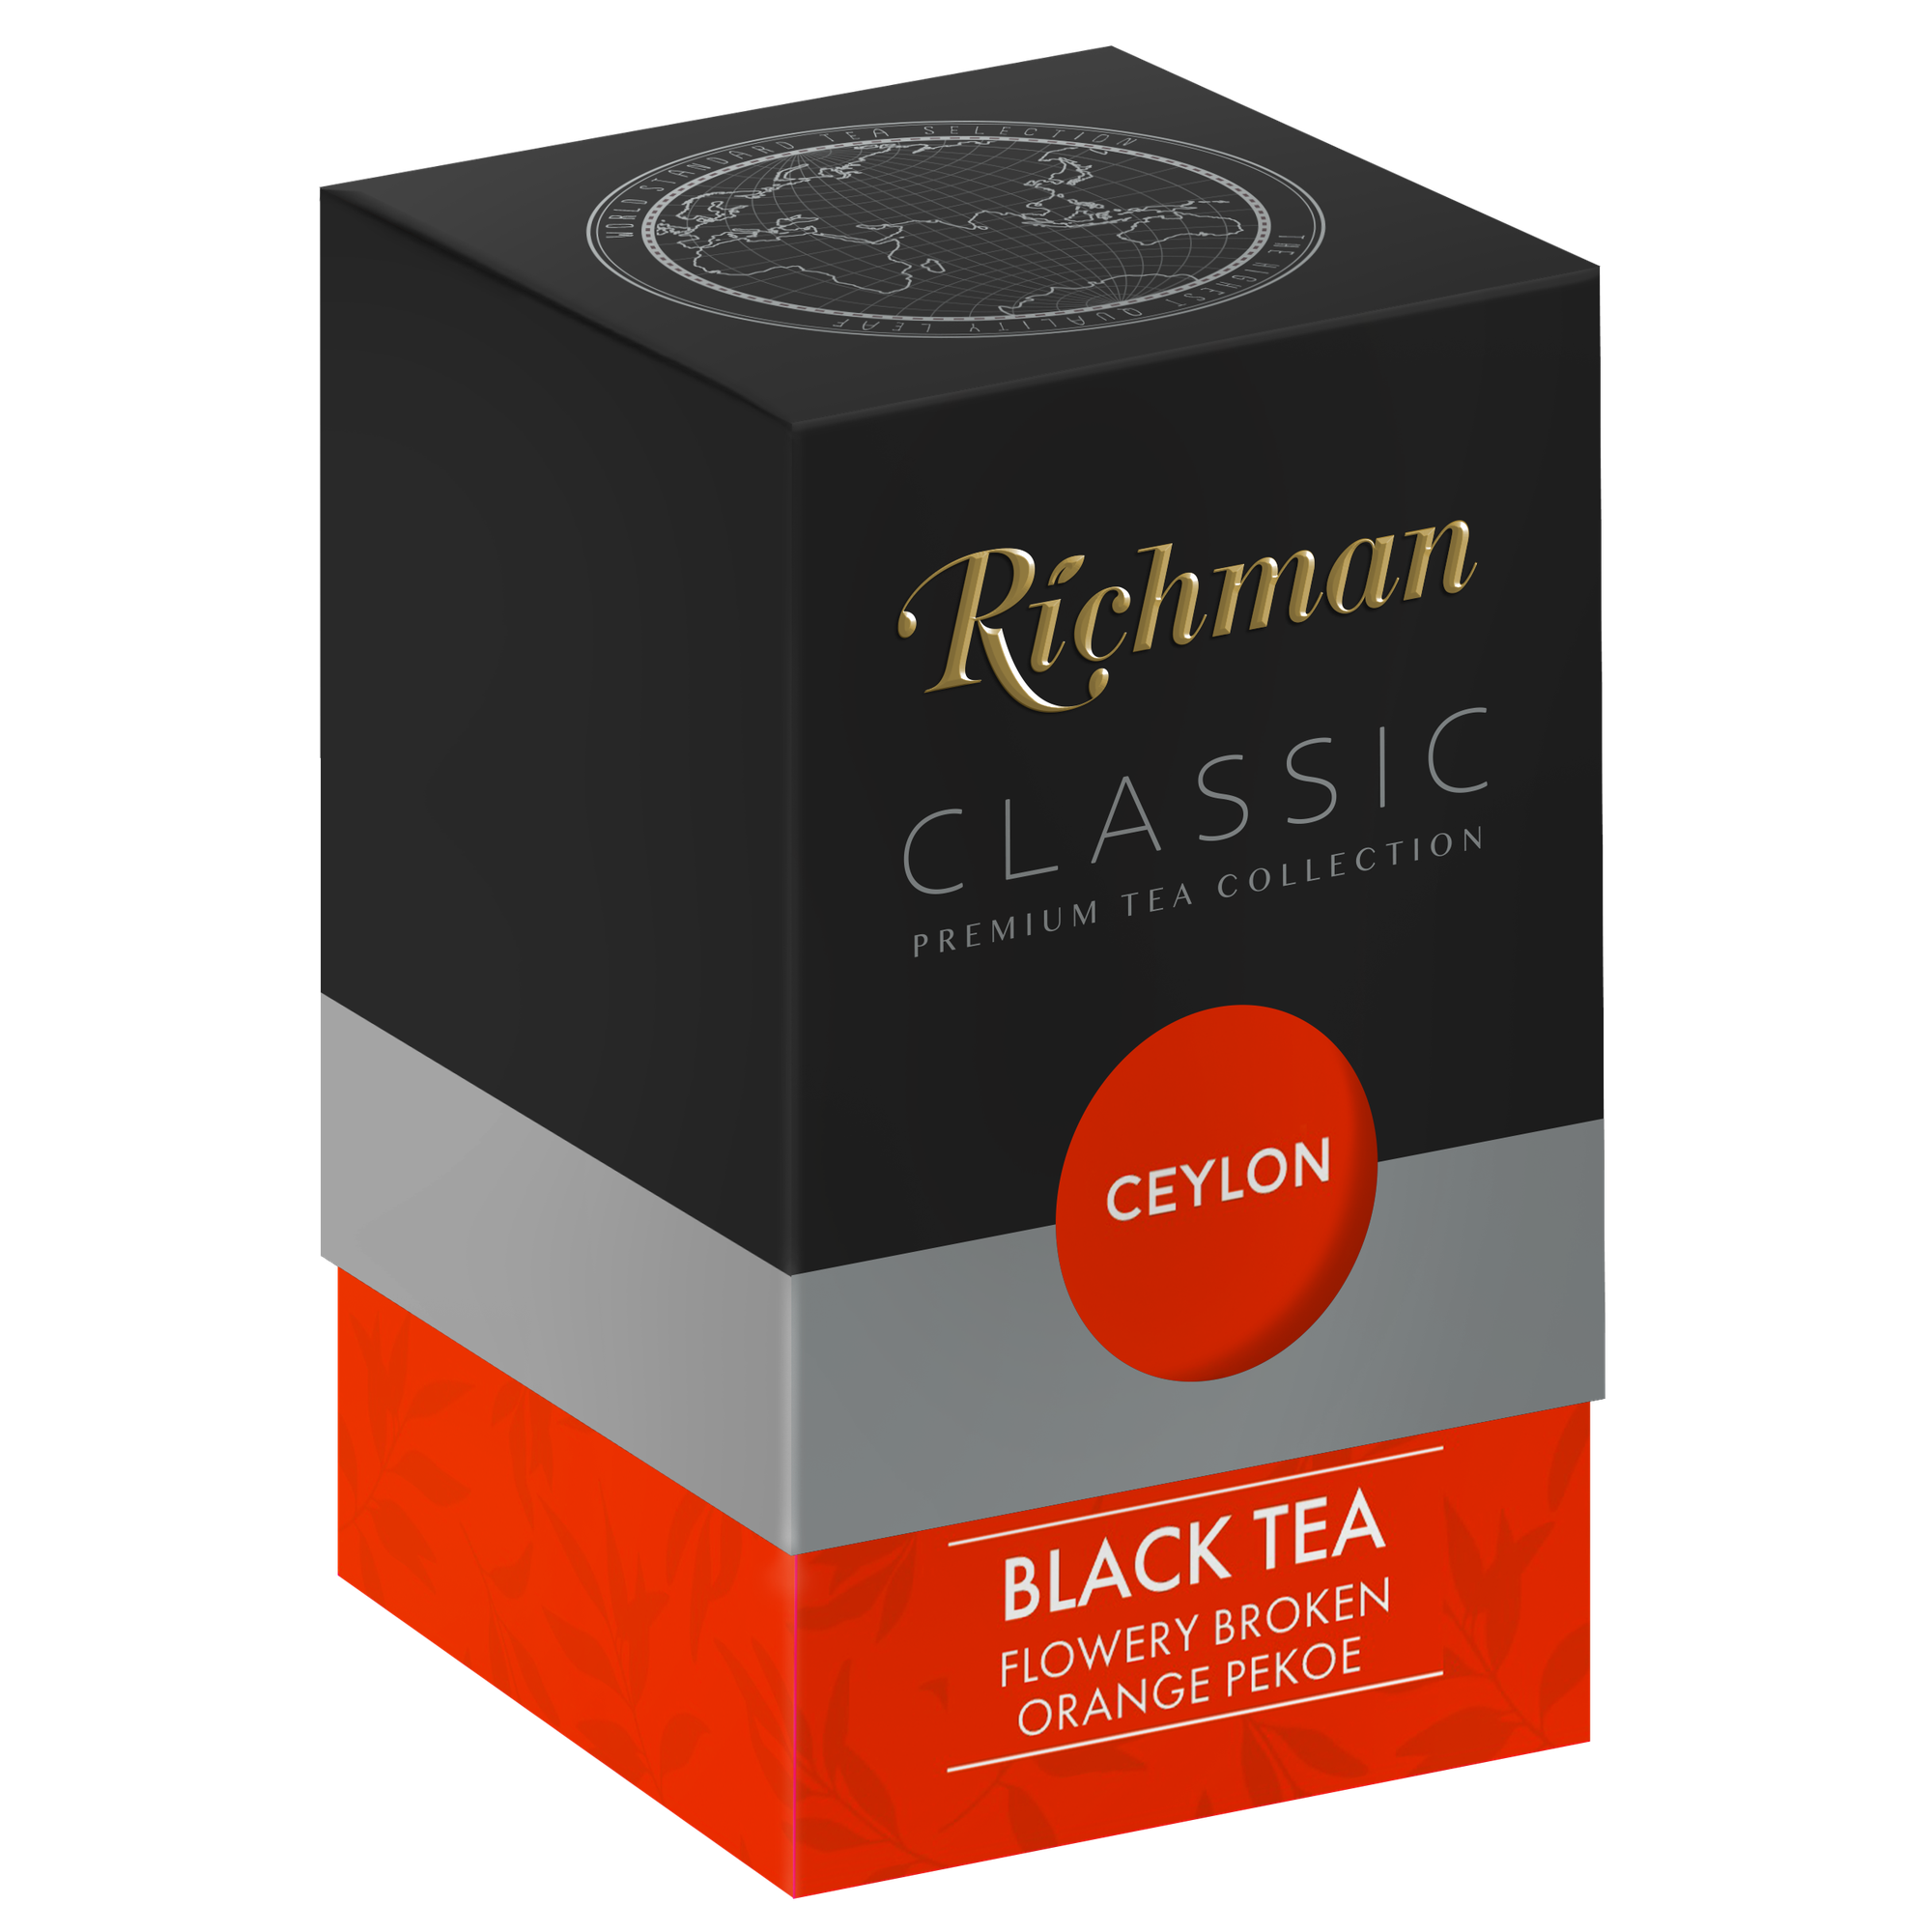 Чай Richman Classic черный среднелистовой, стандарт "Flowery Broken Orange Pekoe" FBOP 100г цейлон, картонная коробка